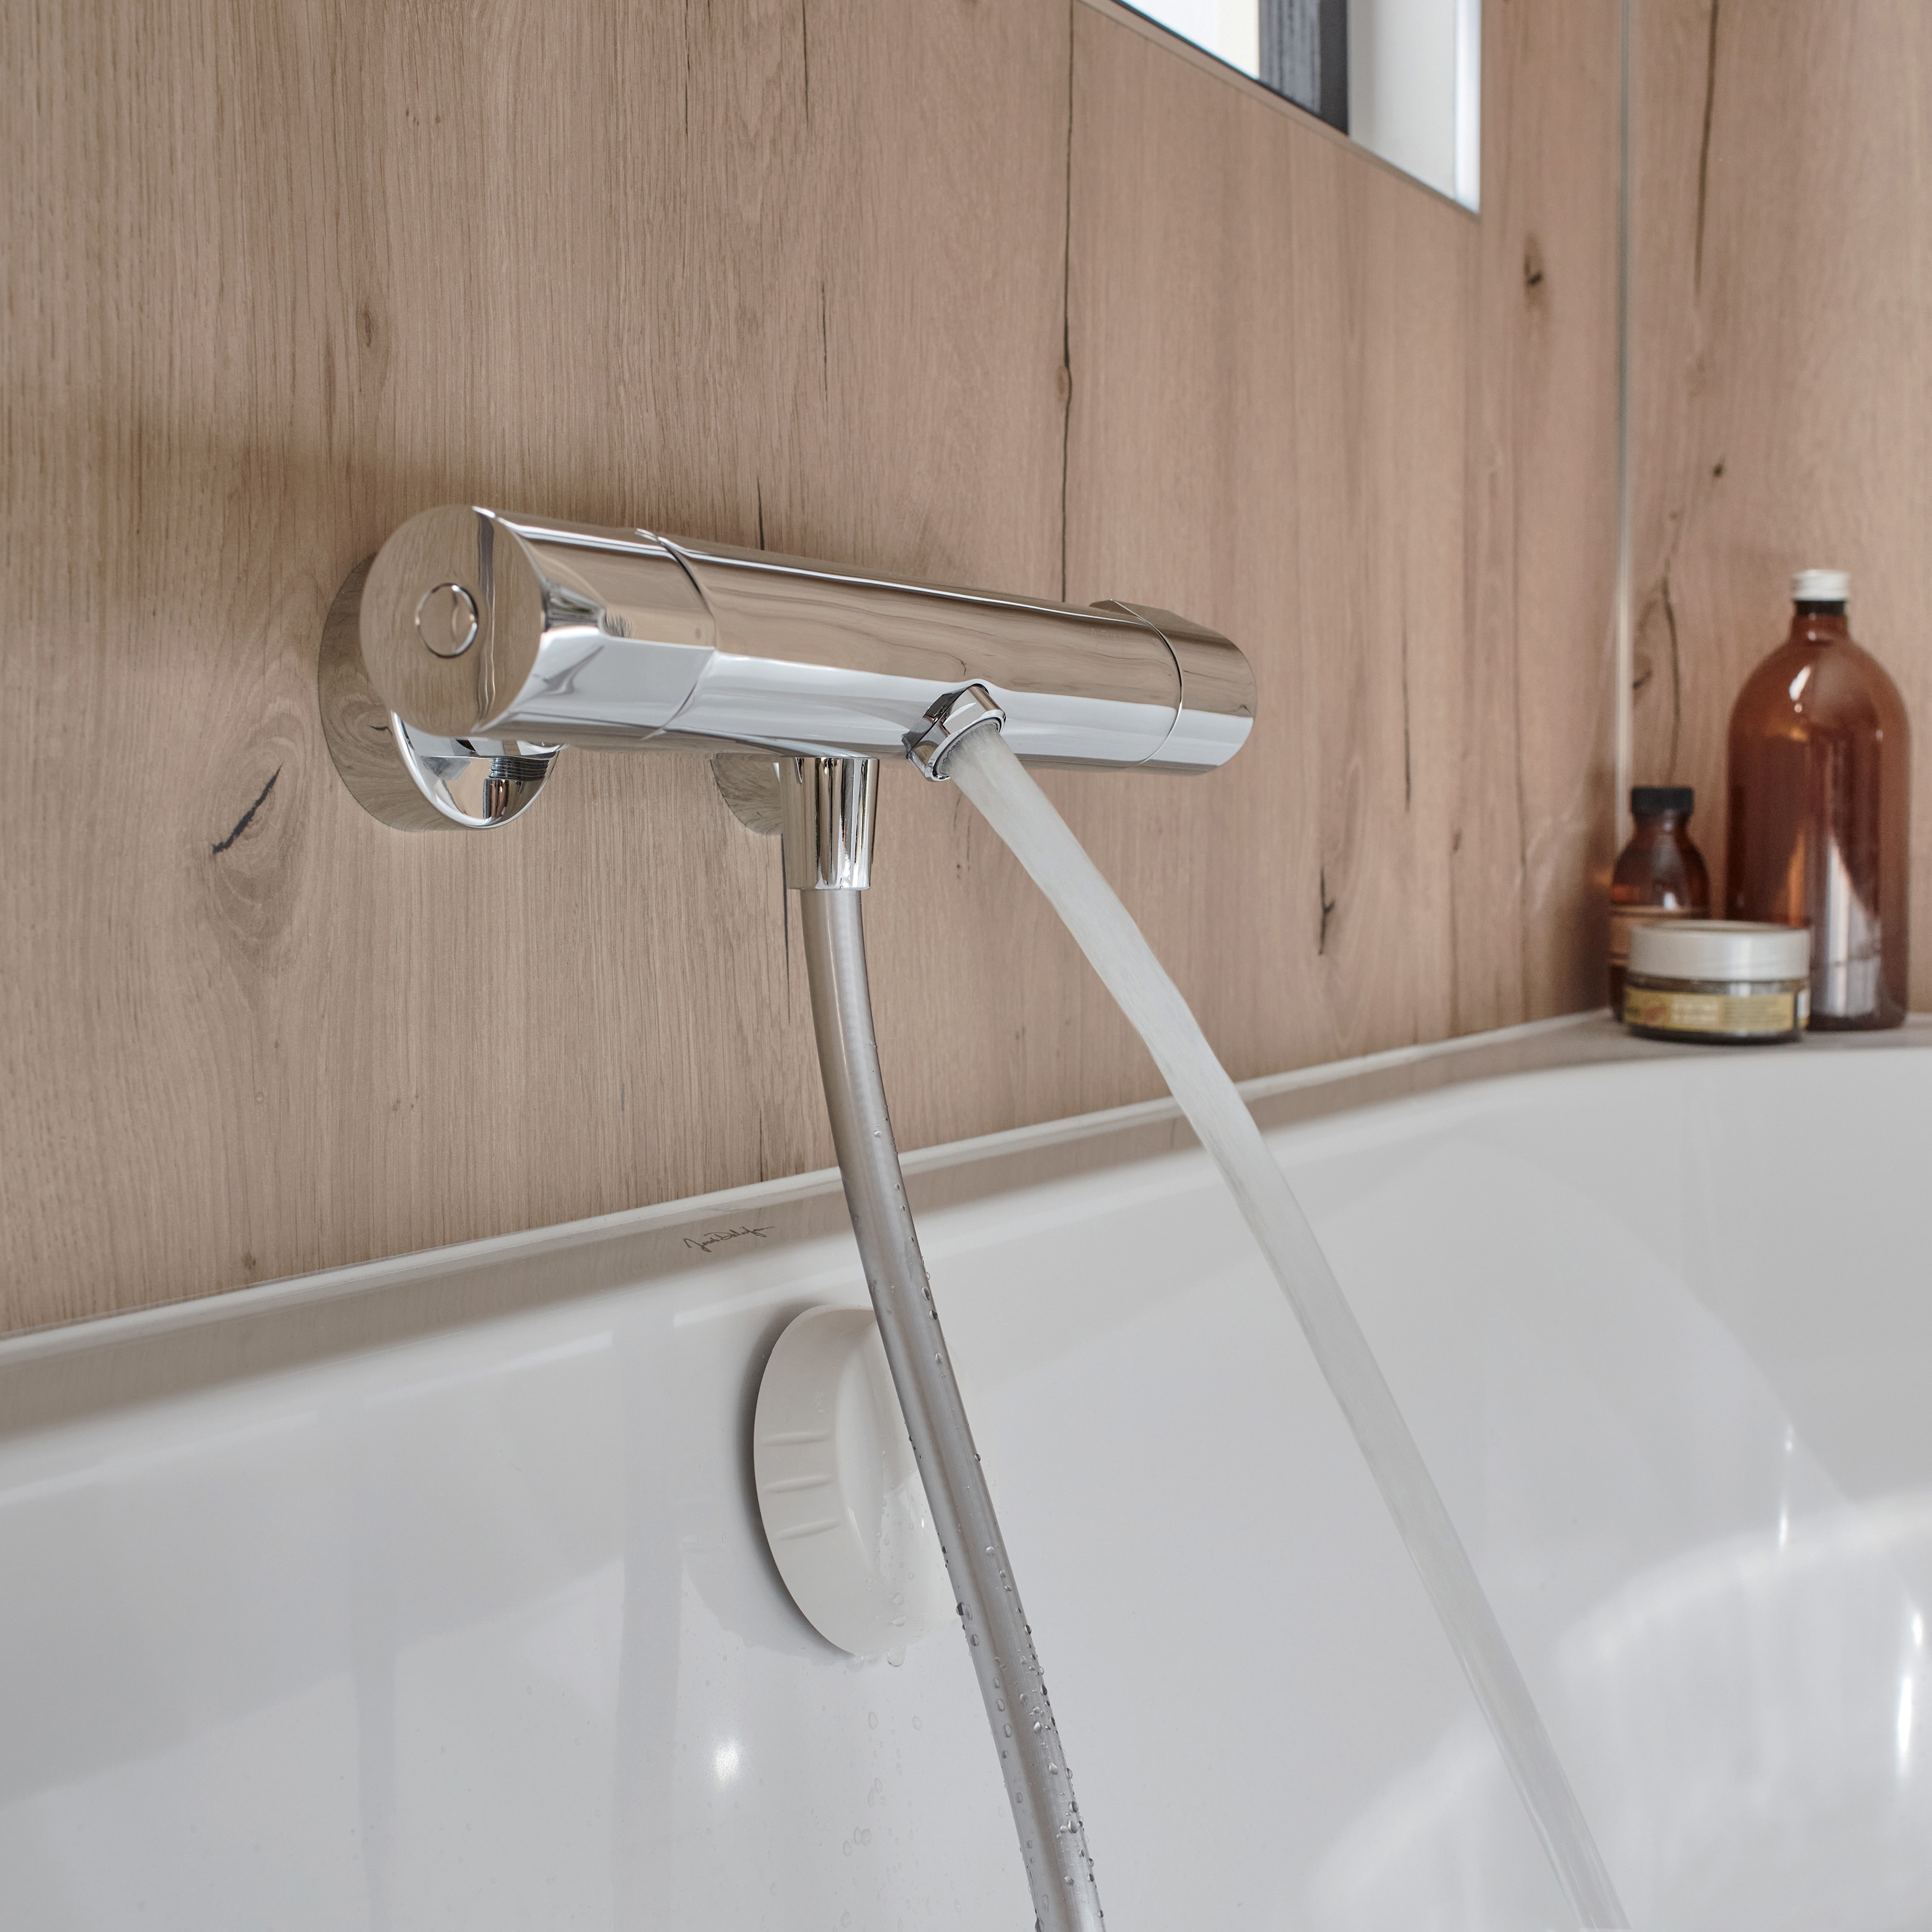 Il existe une multitude de robinets destinés à être installés sur des  lavabos ou des vasques, il est donc essentiel de prendre en compte  plusieurs points lors du choix de votre mitigeur